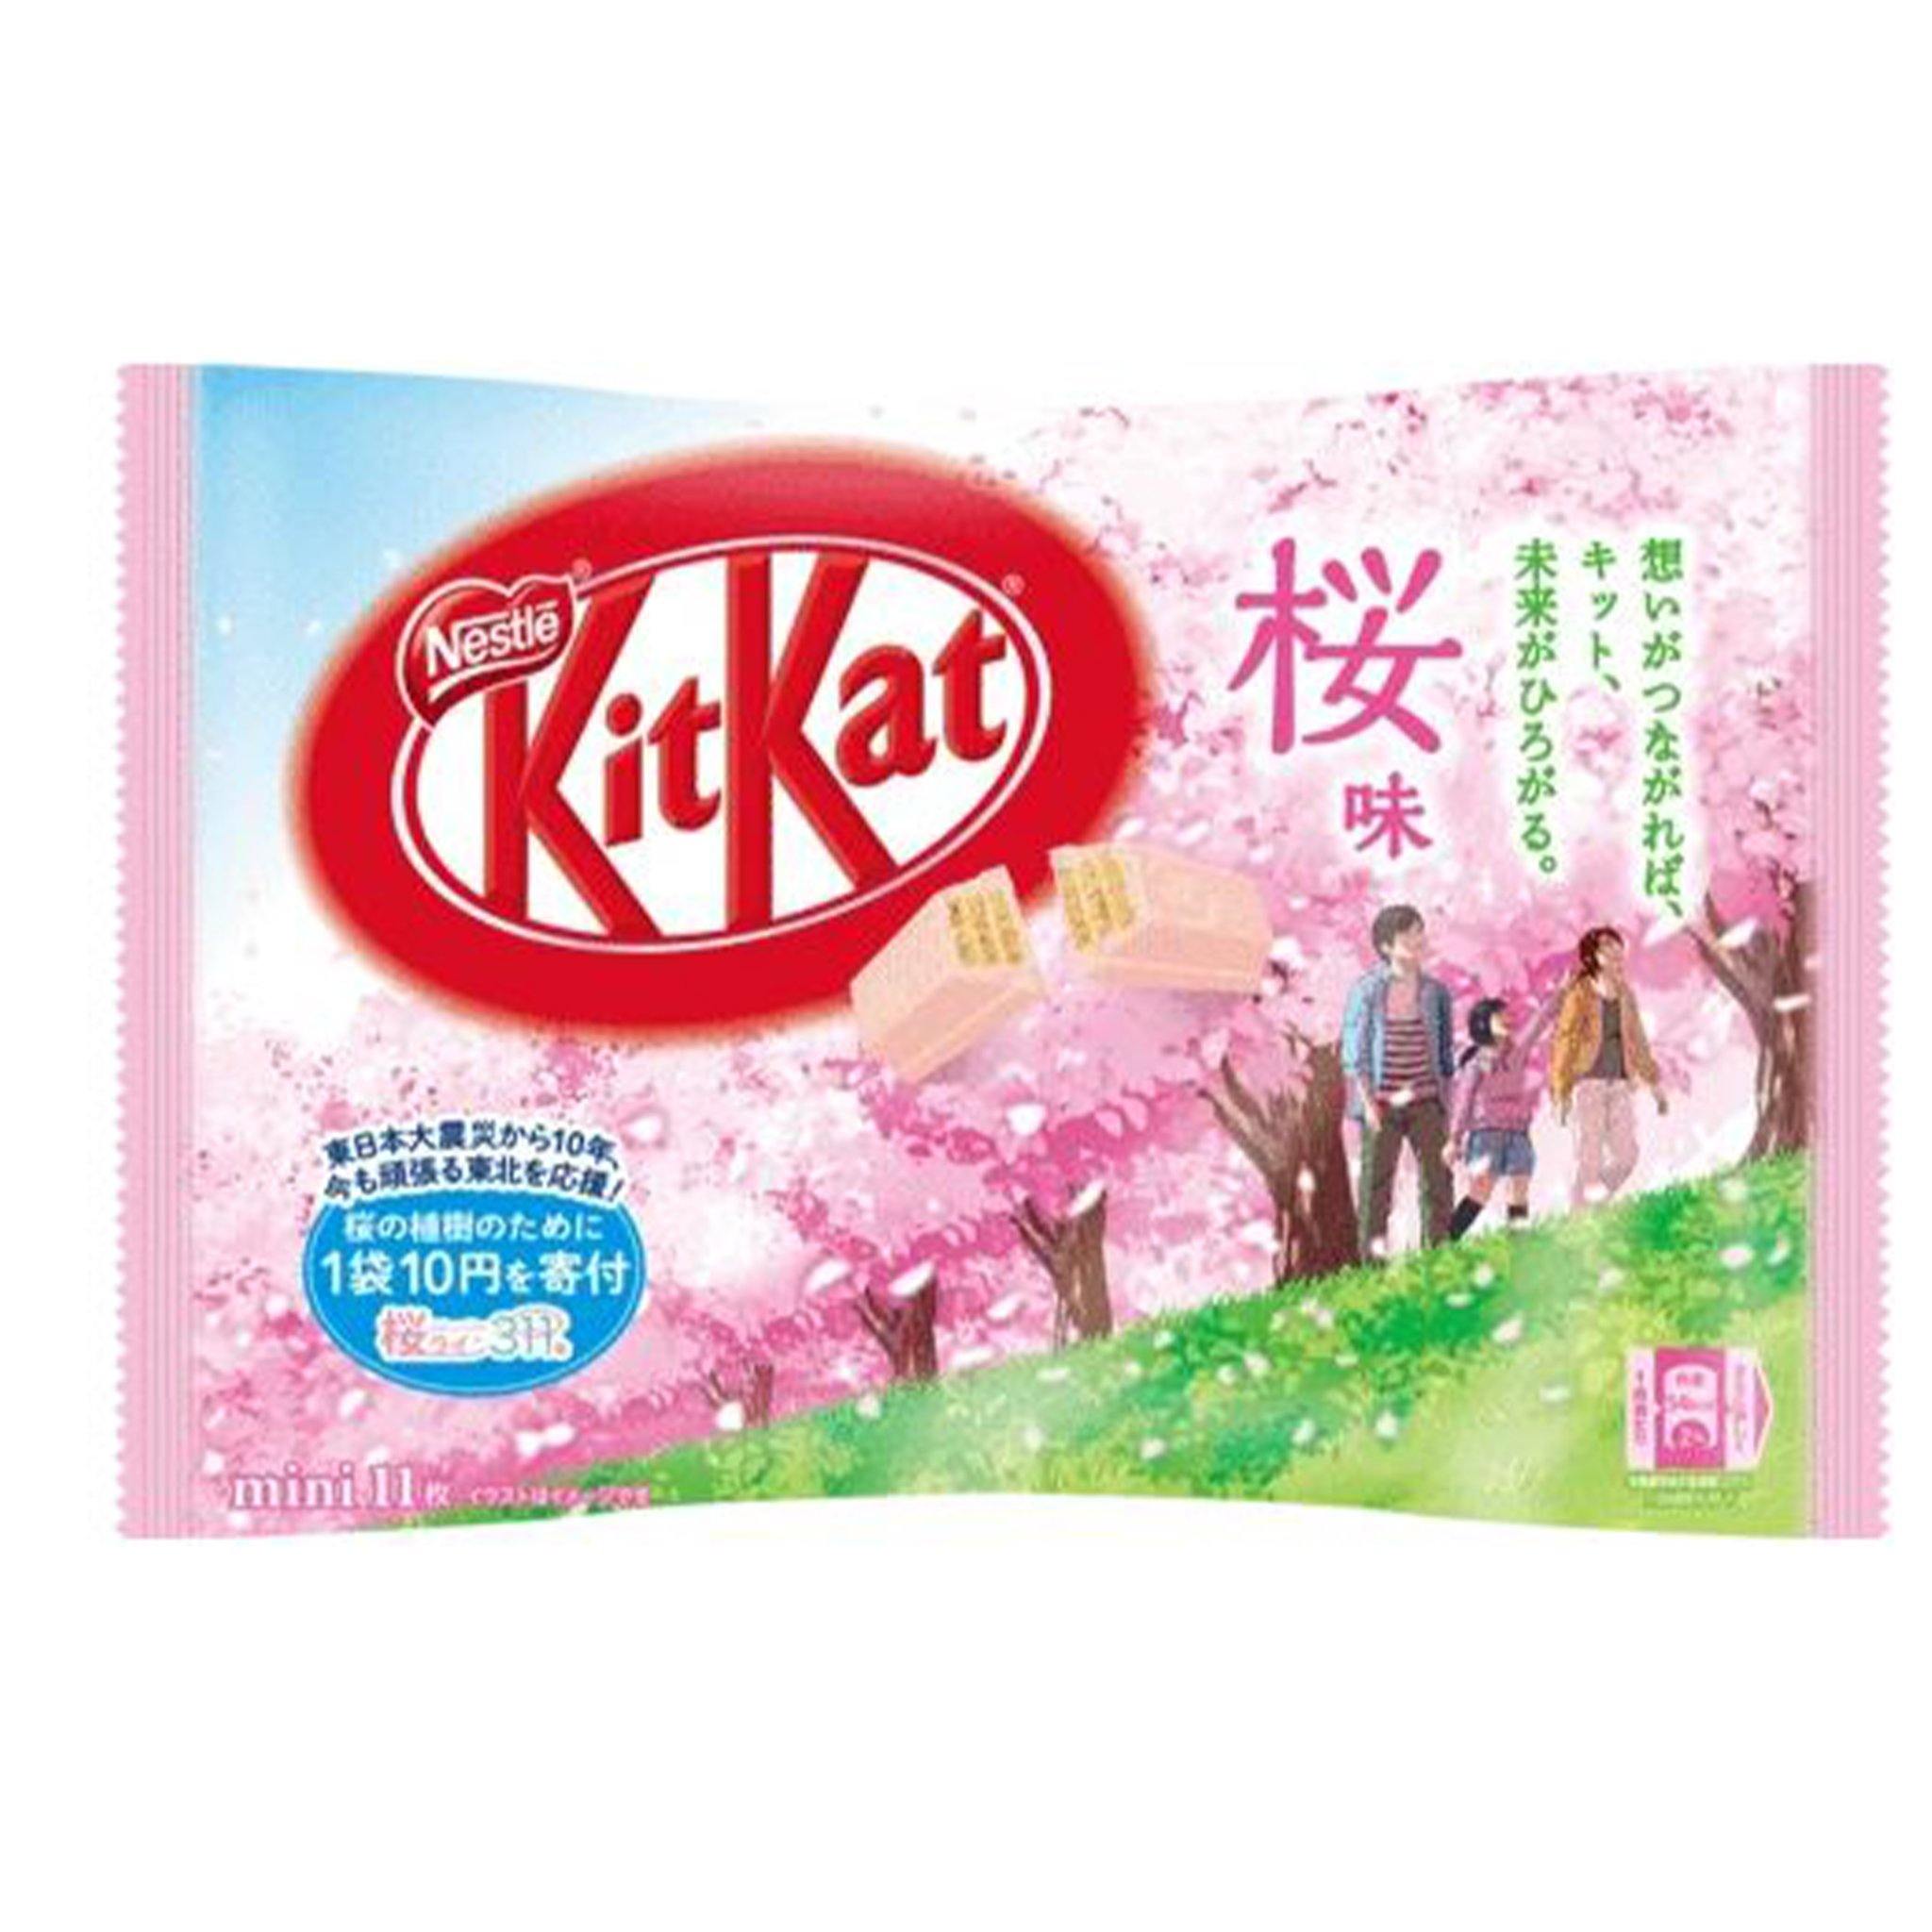 Kit Kat Sakura - Japan - Sweet Exotics